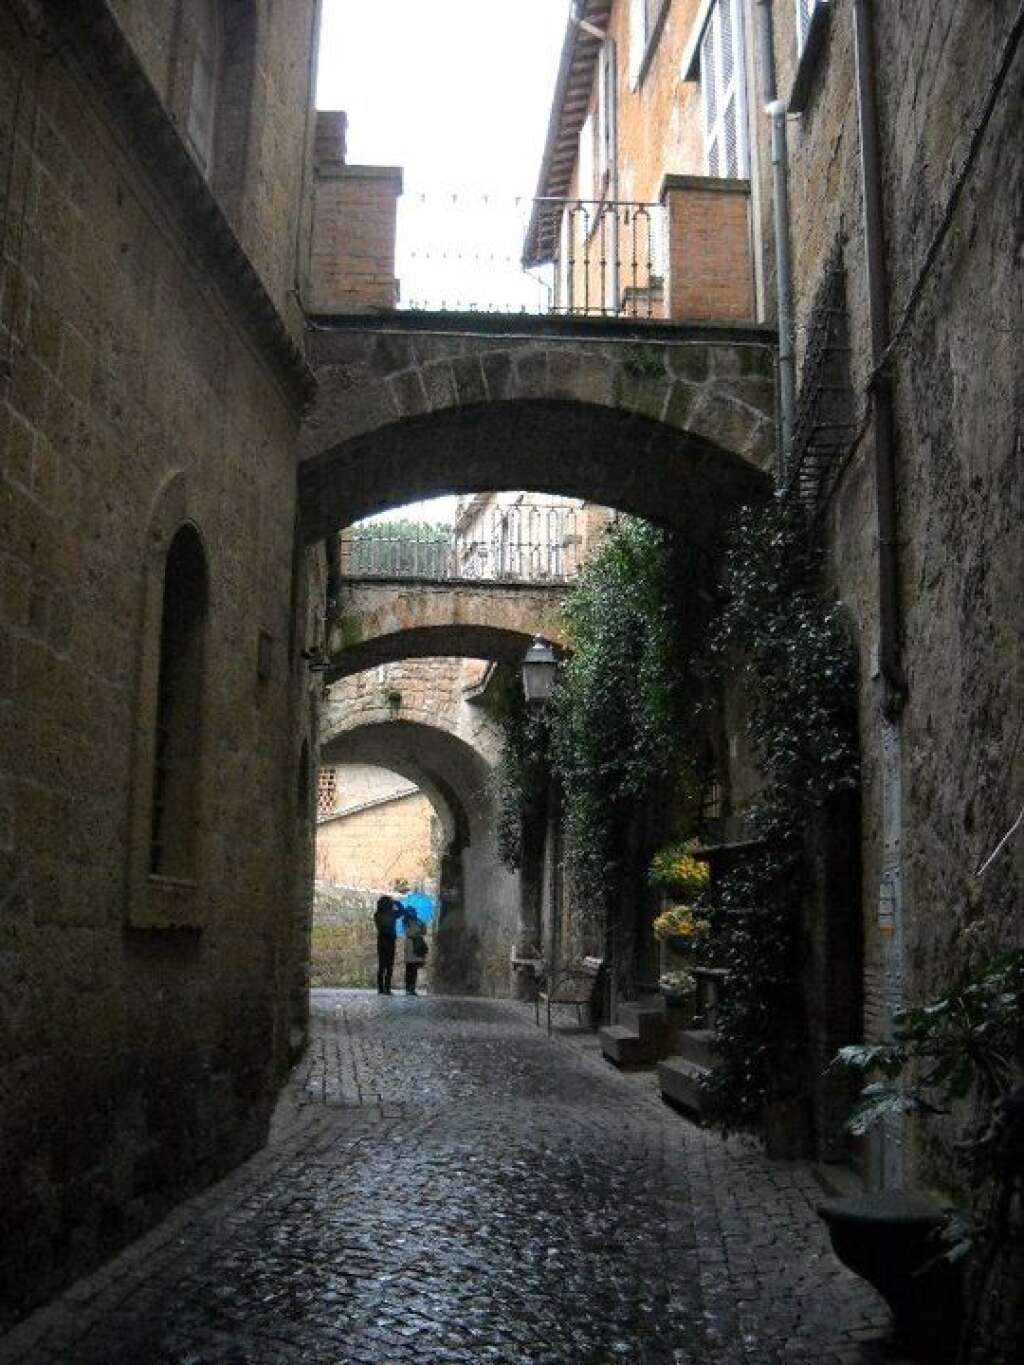 Les rues d'Orvieto - Les ruelles de la ville sont surplombées par des ponts qui amorcent les différences de hauteur. Ces passerelles offrent un charme unique qui rappelle pour certains les passages de Venise.